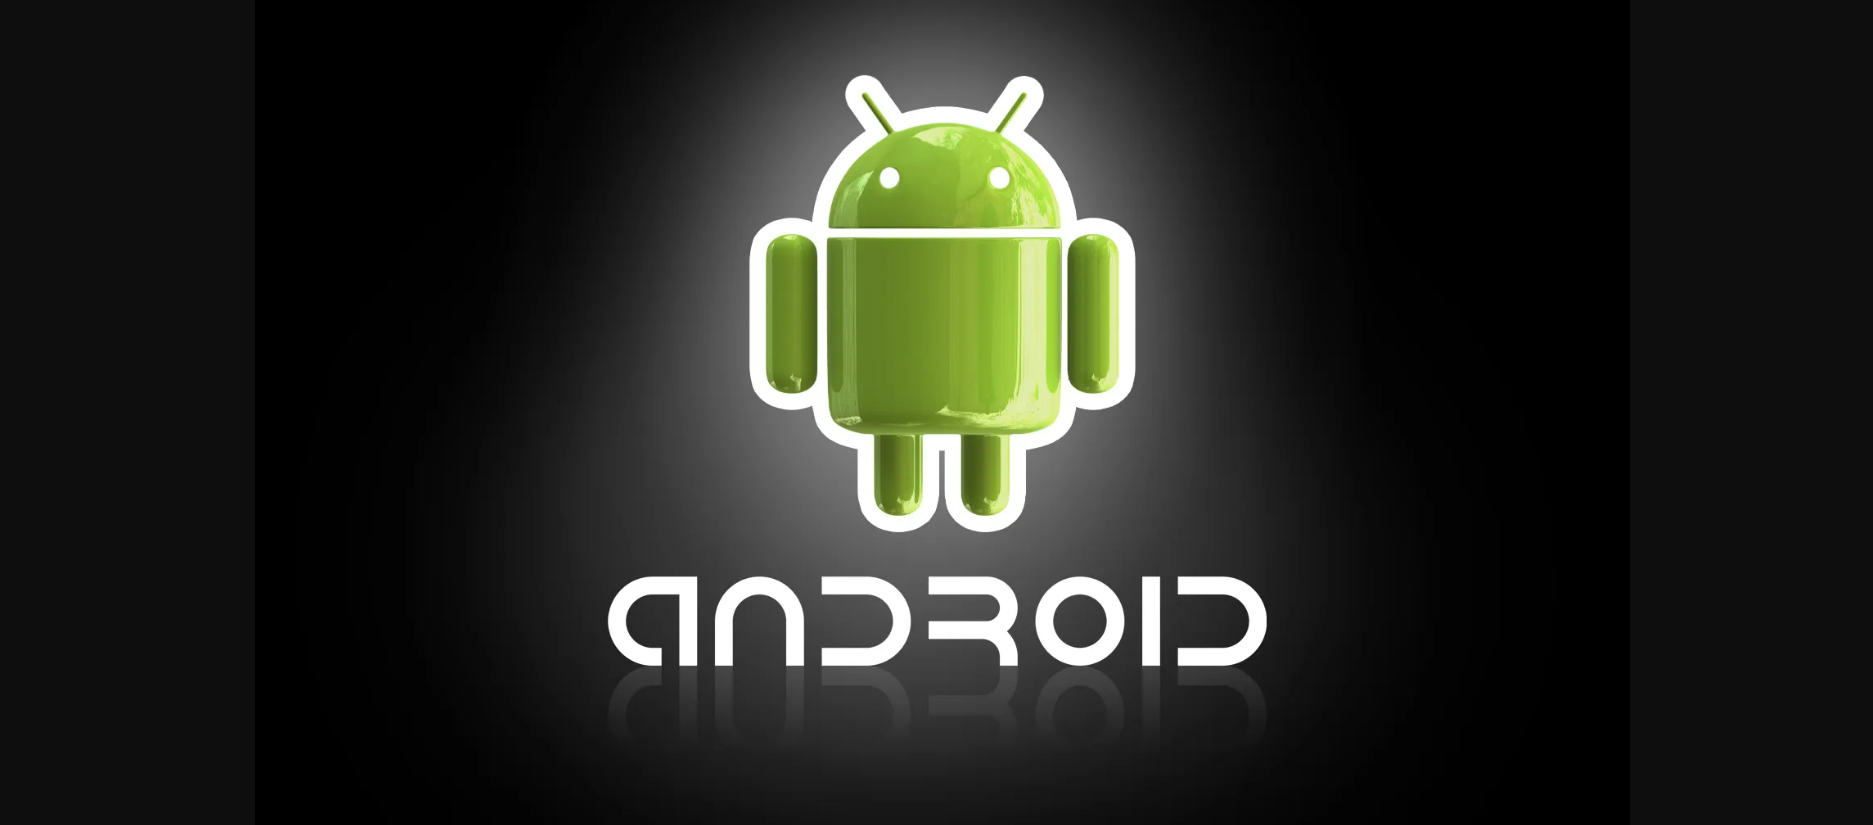 carpeta secreta en Android